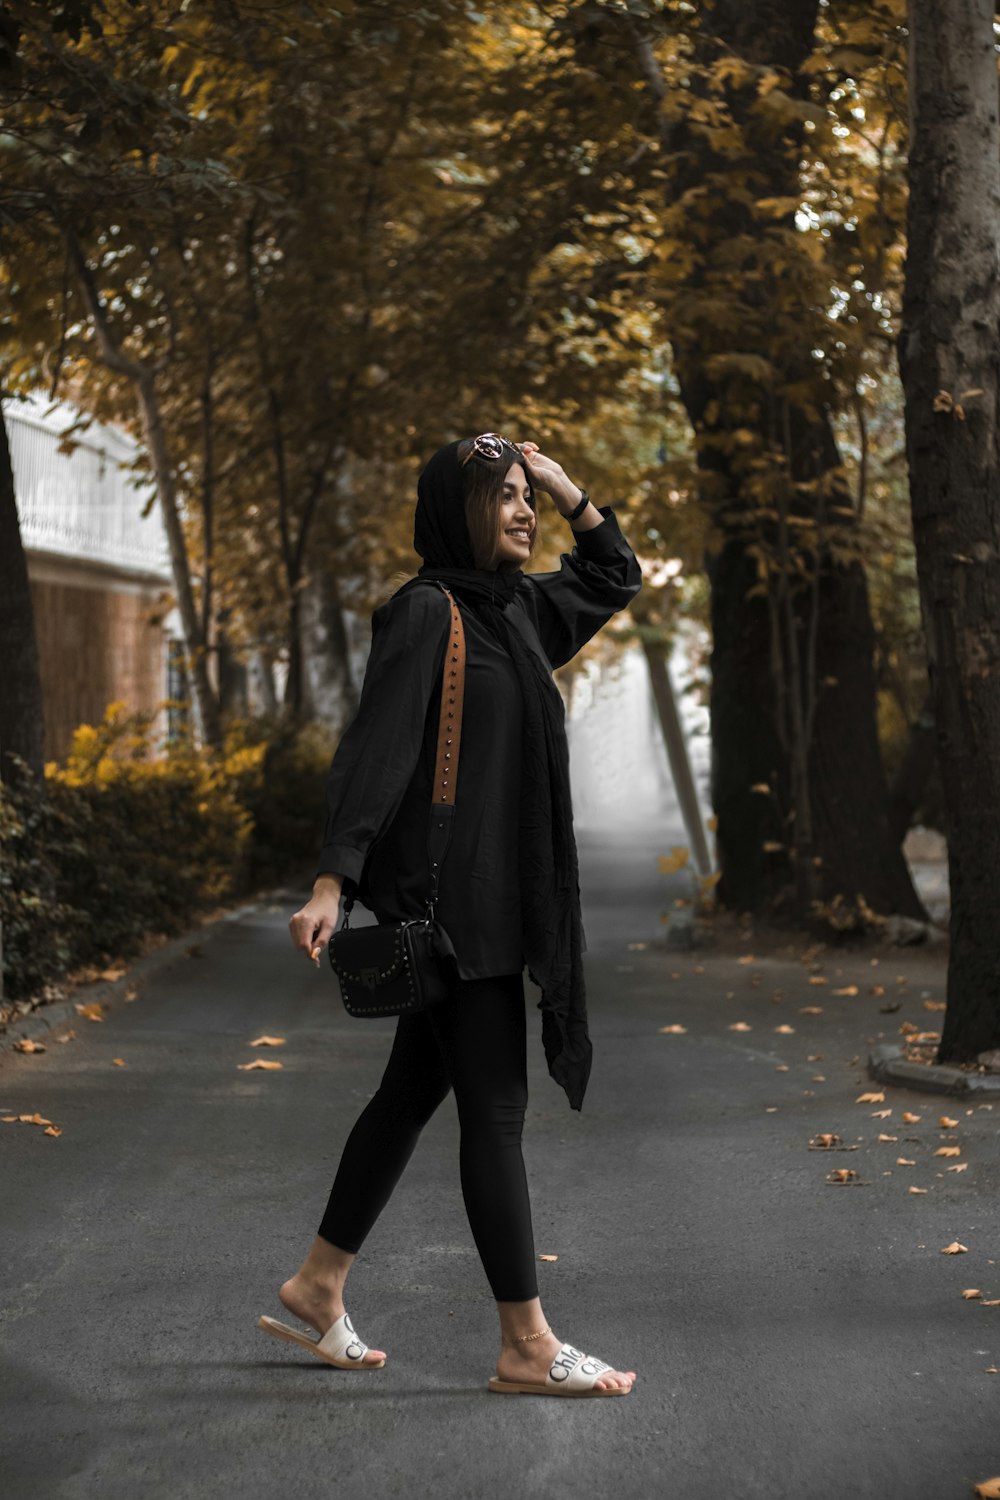 Una mujer caminando por una calle con una chaqueta negra